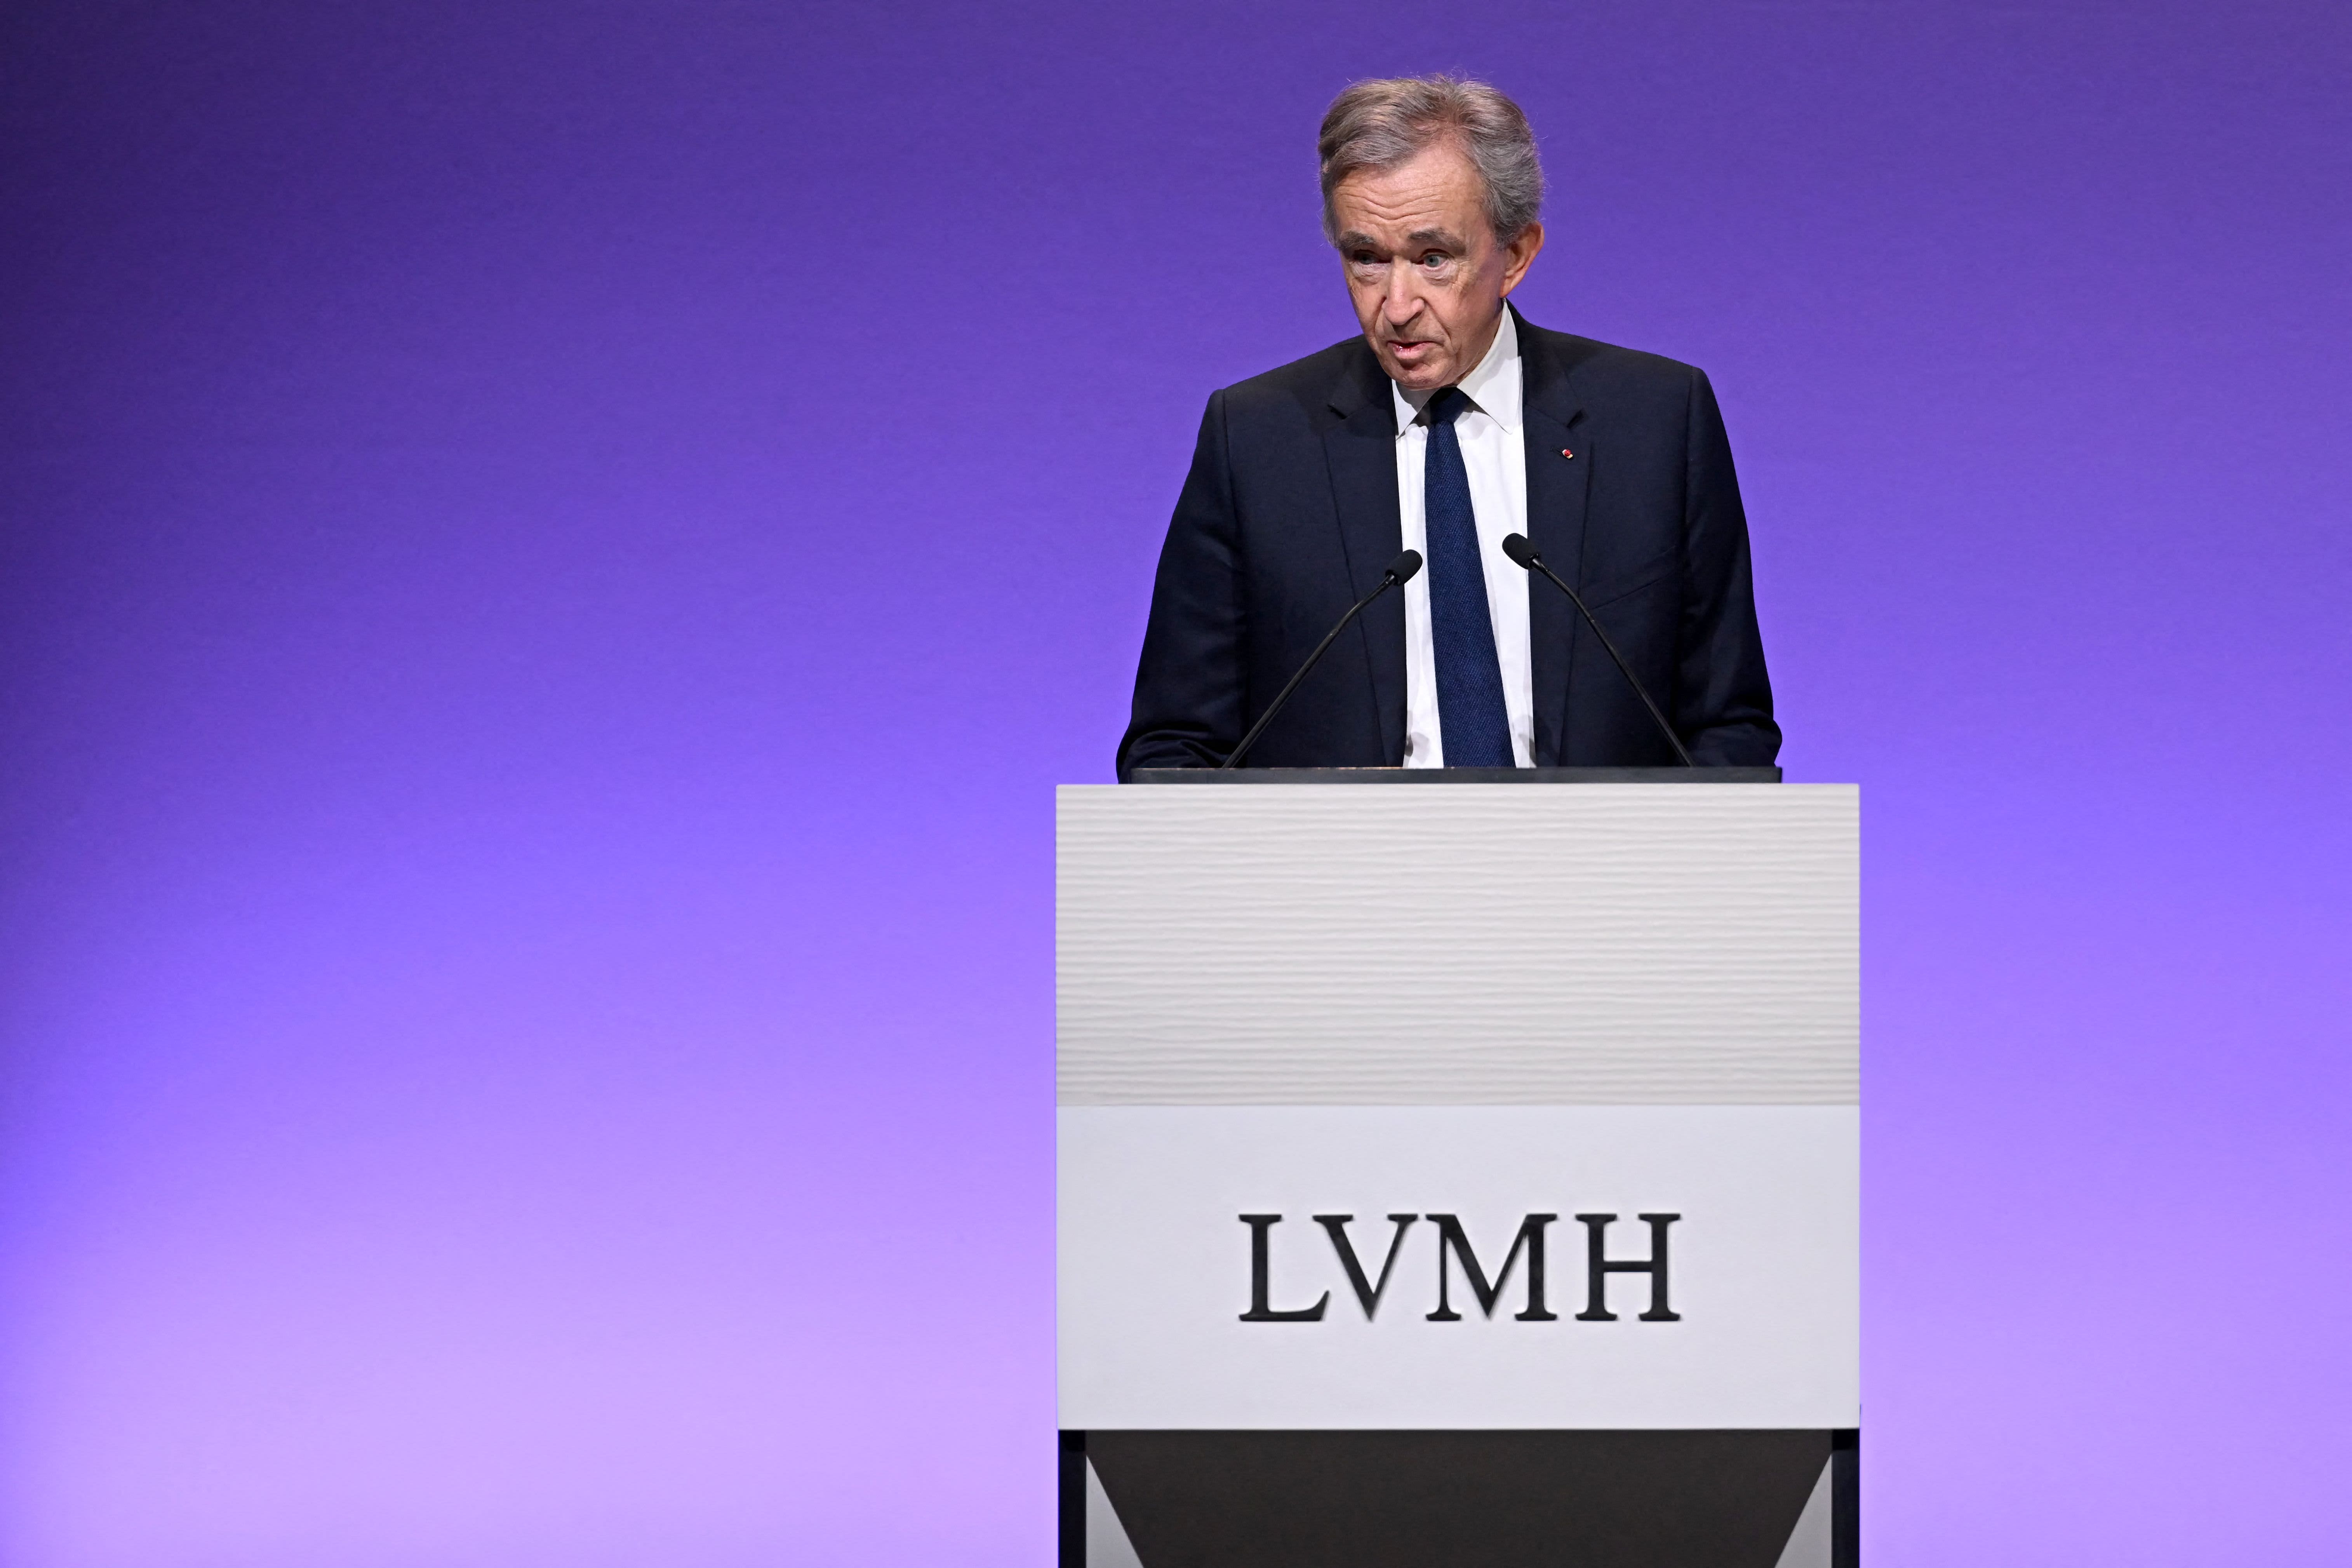 LVMH is a family affair says Bernard Arnault; shocked at internet